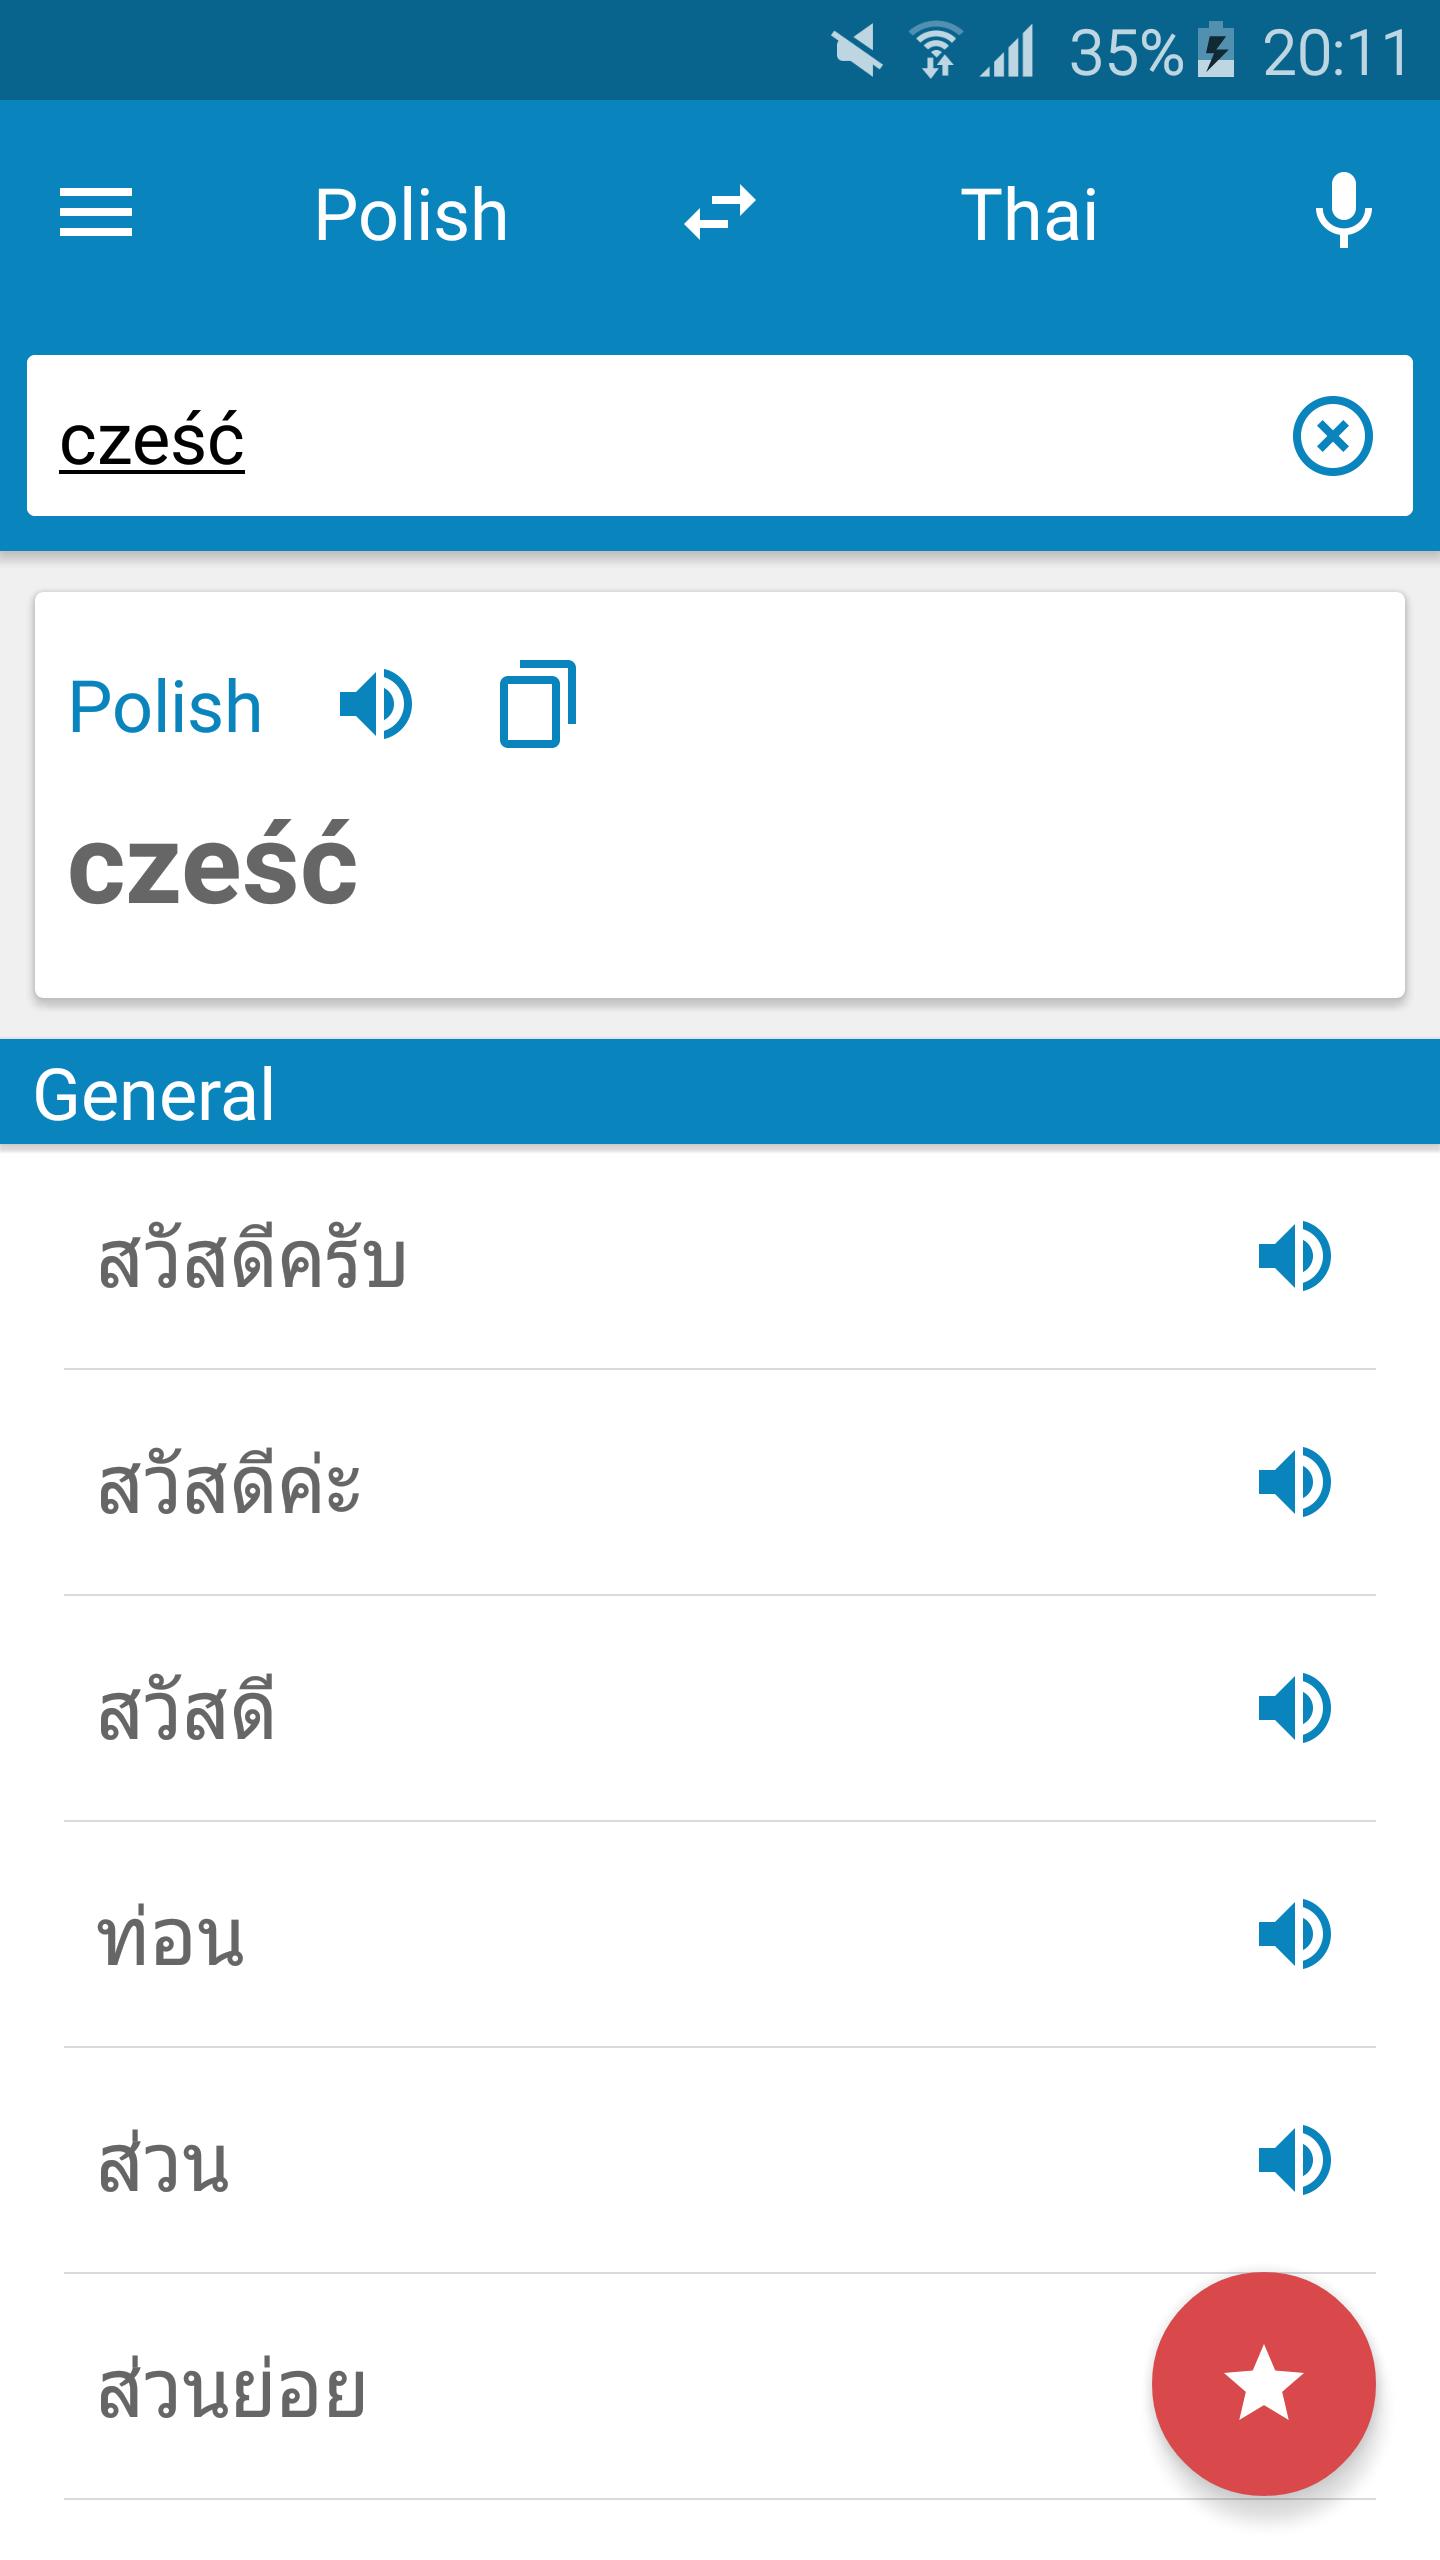 Słownik polsko-tajski for Android - APK Download